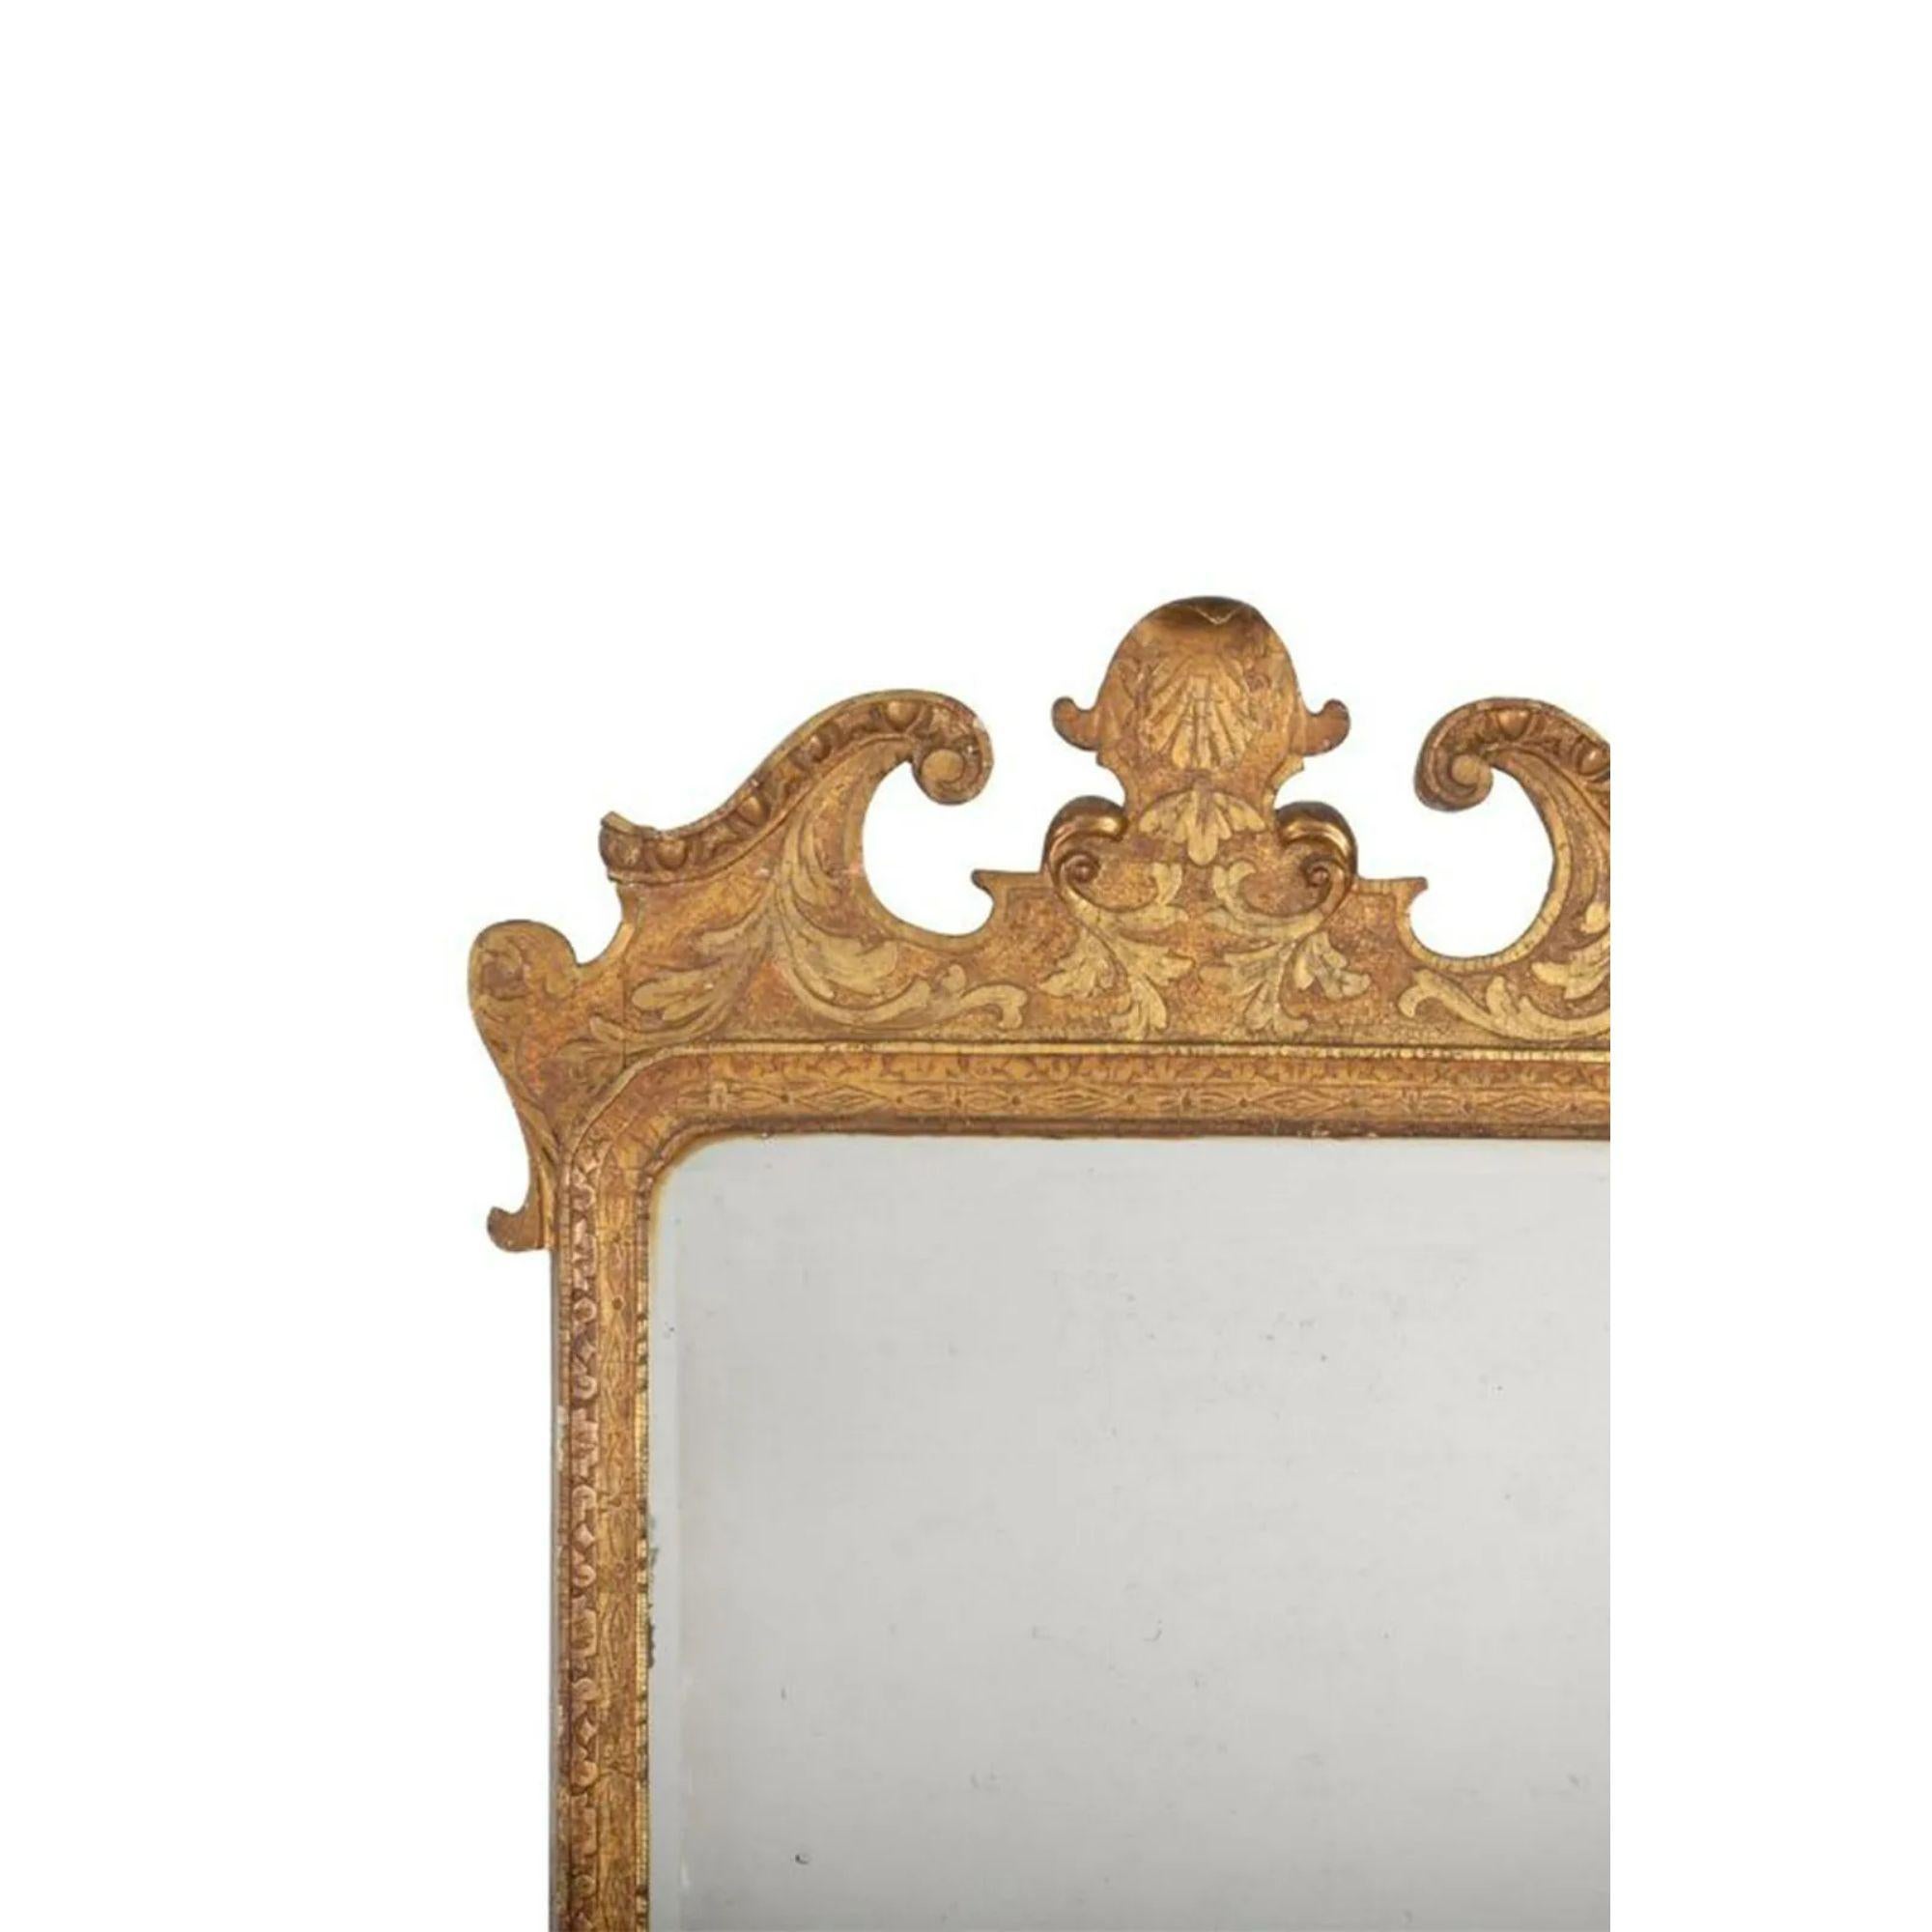 Georg II. Giltwood-Spiegel, um 1735

Die rechteckige, abgeschrägte Platte ist in eine geometrisch geschnitzte Umrandung eingefasst, die von einem akanthusgeschnitzten, gebrochenen Giebel überragt wird, in dessen Mitte sich eine blattförmige